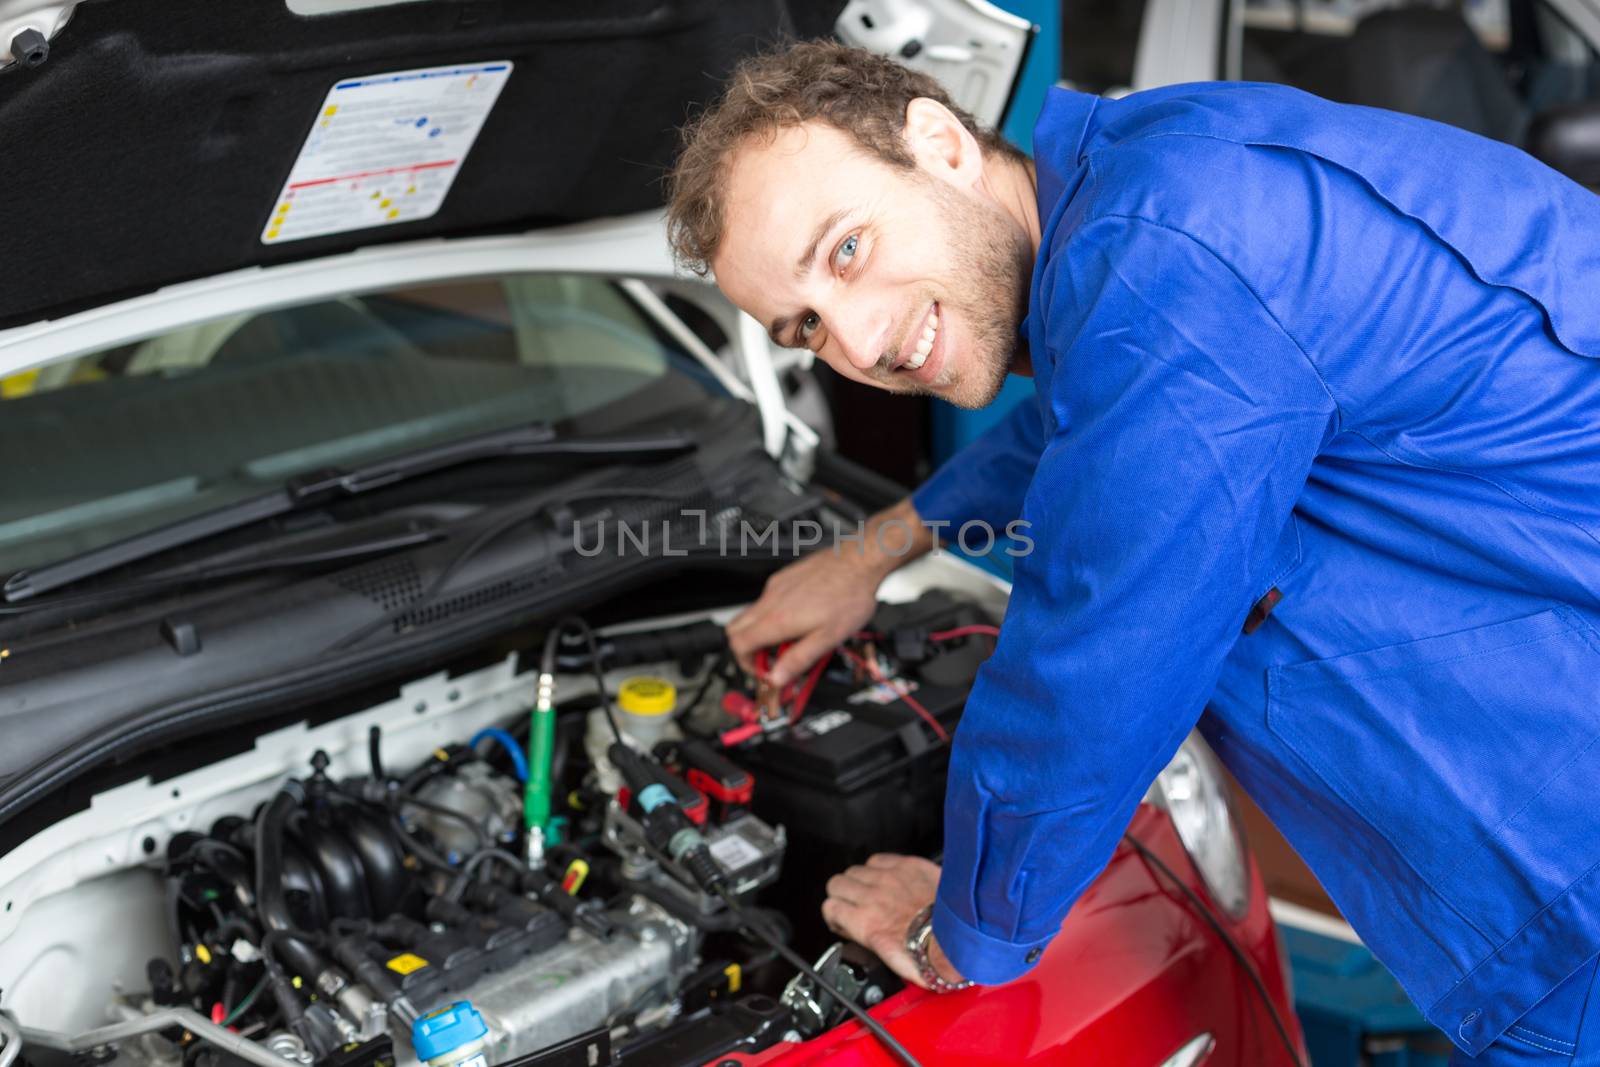 Mechanic repairing a car in a workshop or garage by ikonoklast_fotografie